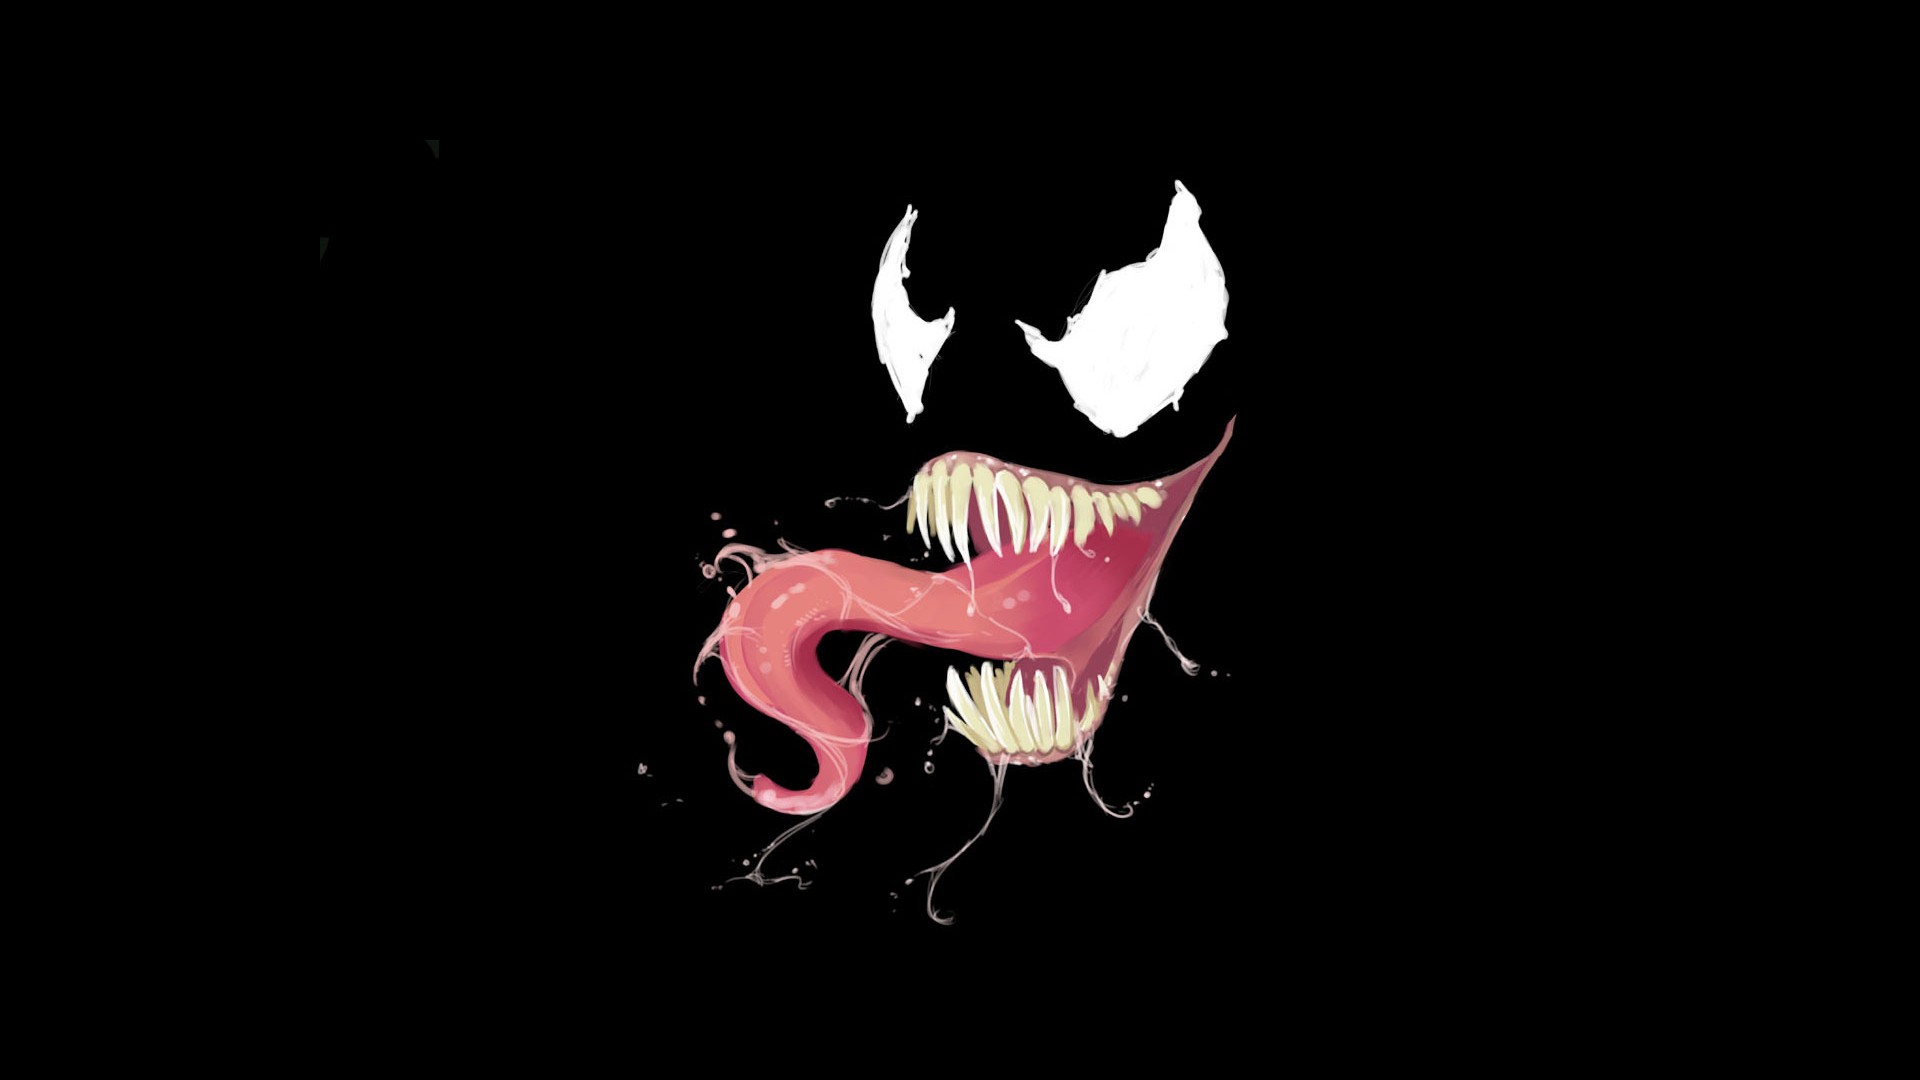 Wallpaper Venom of spider man of marvel comics minimal